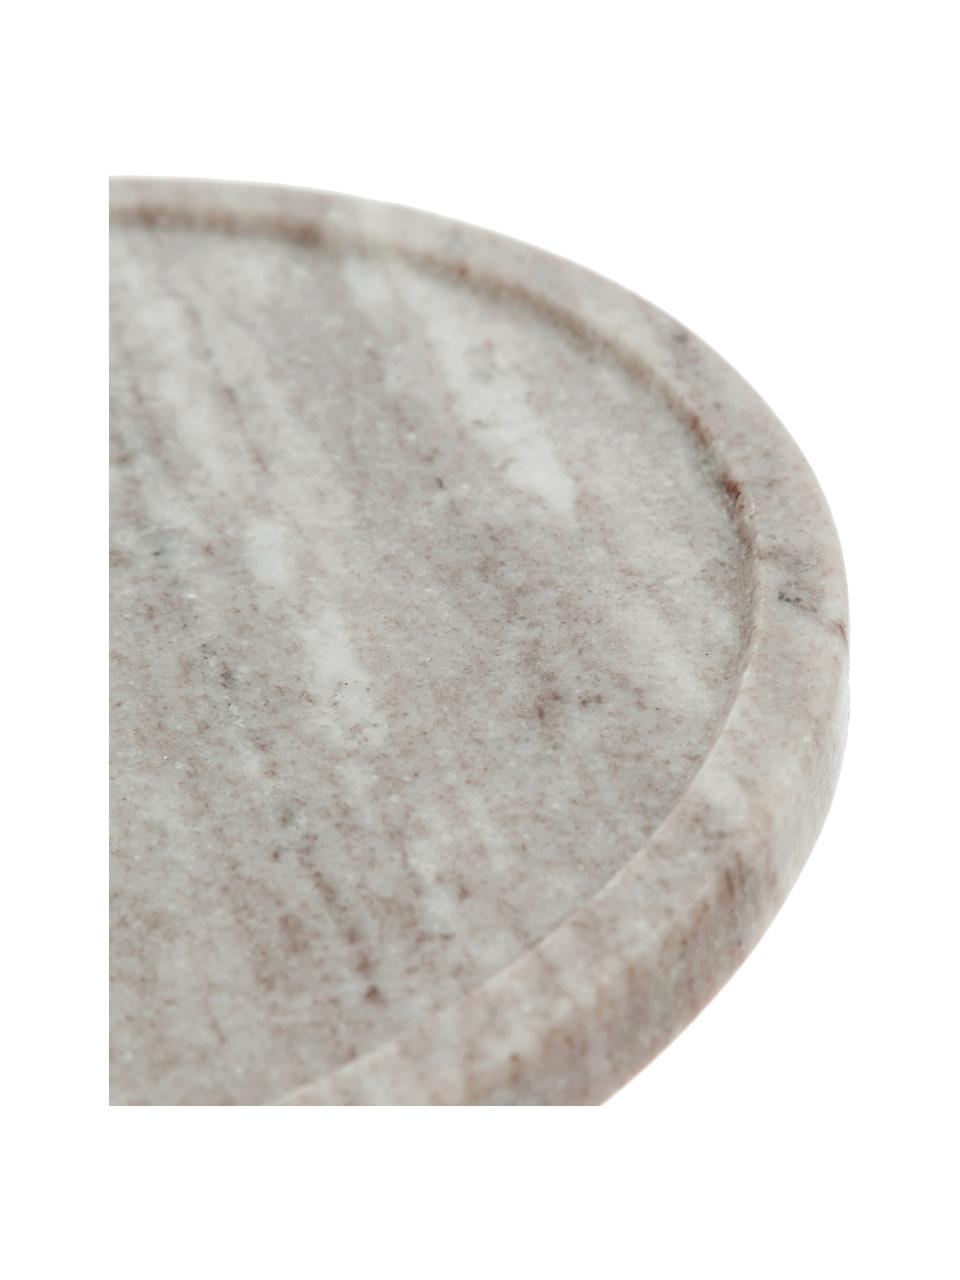 Mramorový poklop na sýry Cheese, Ø 25 cm, Béžová, transparentní, Ø 25 cm, V 14 cm